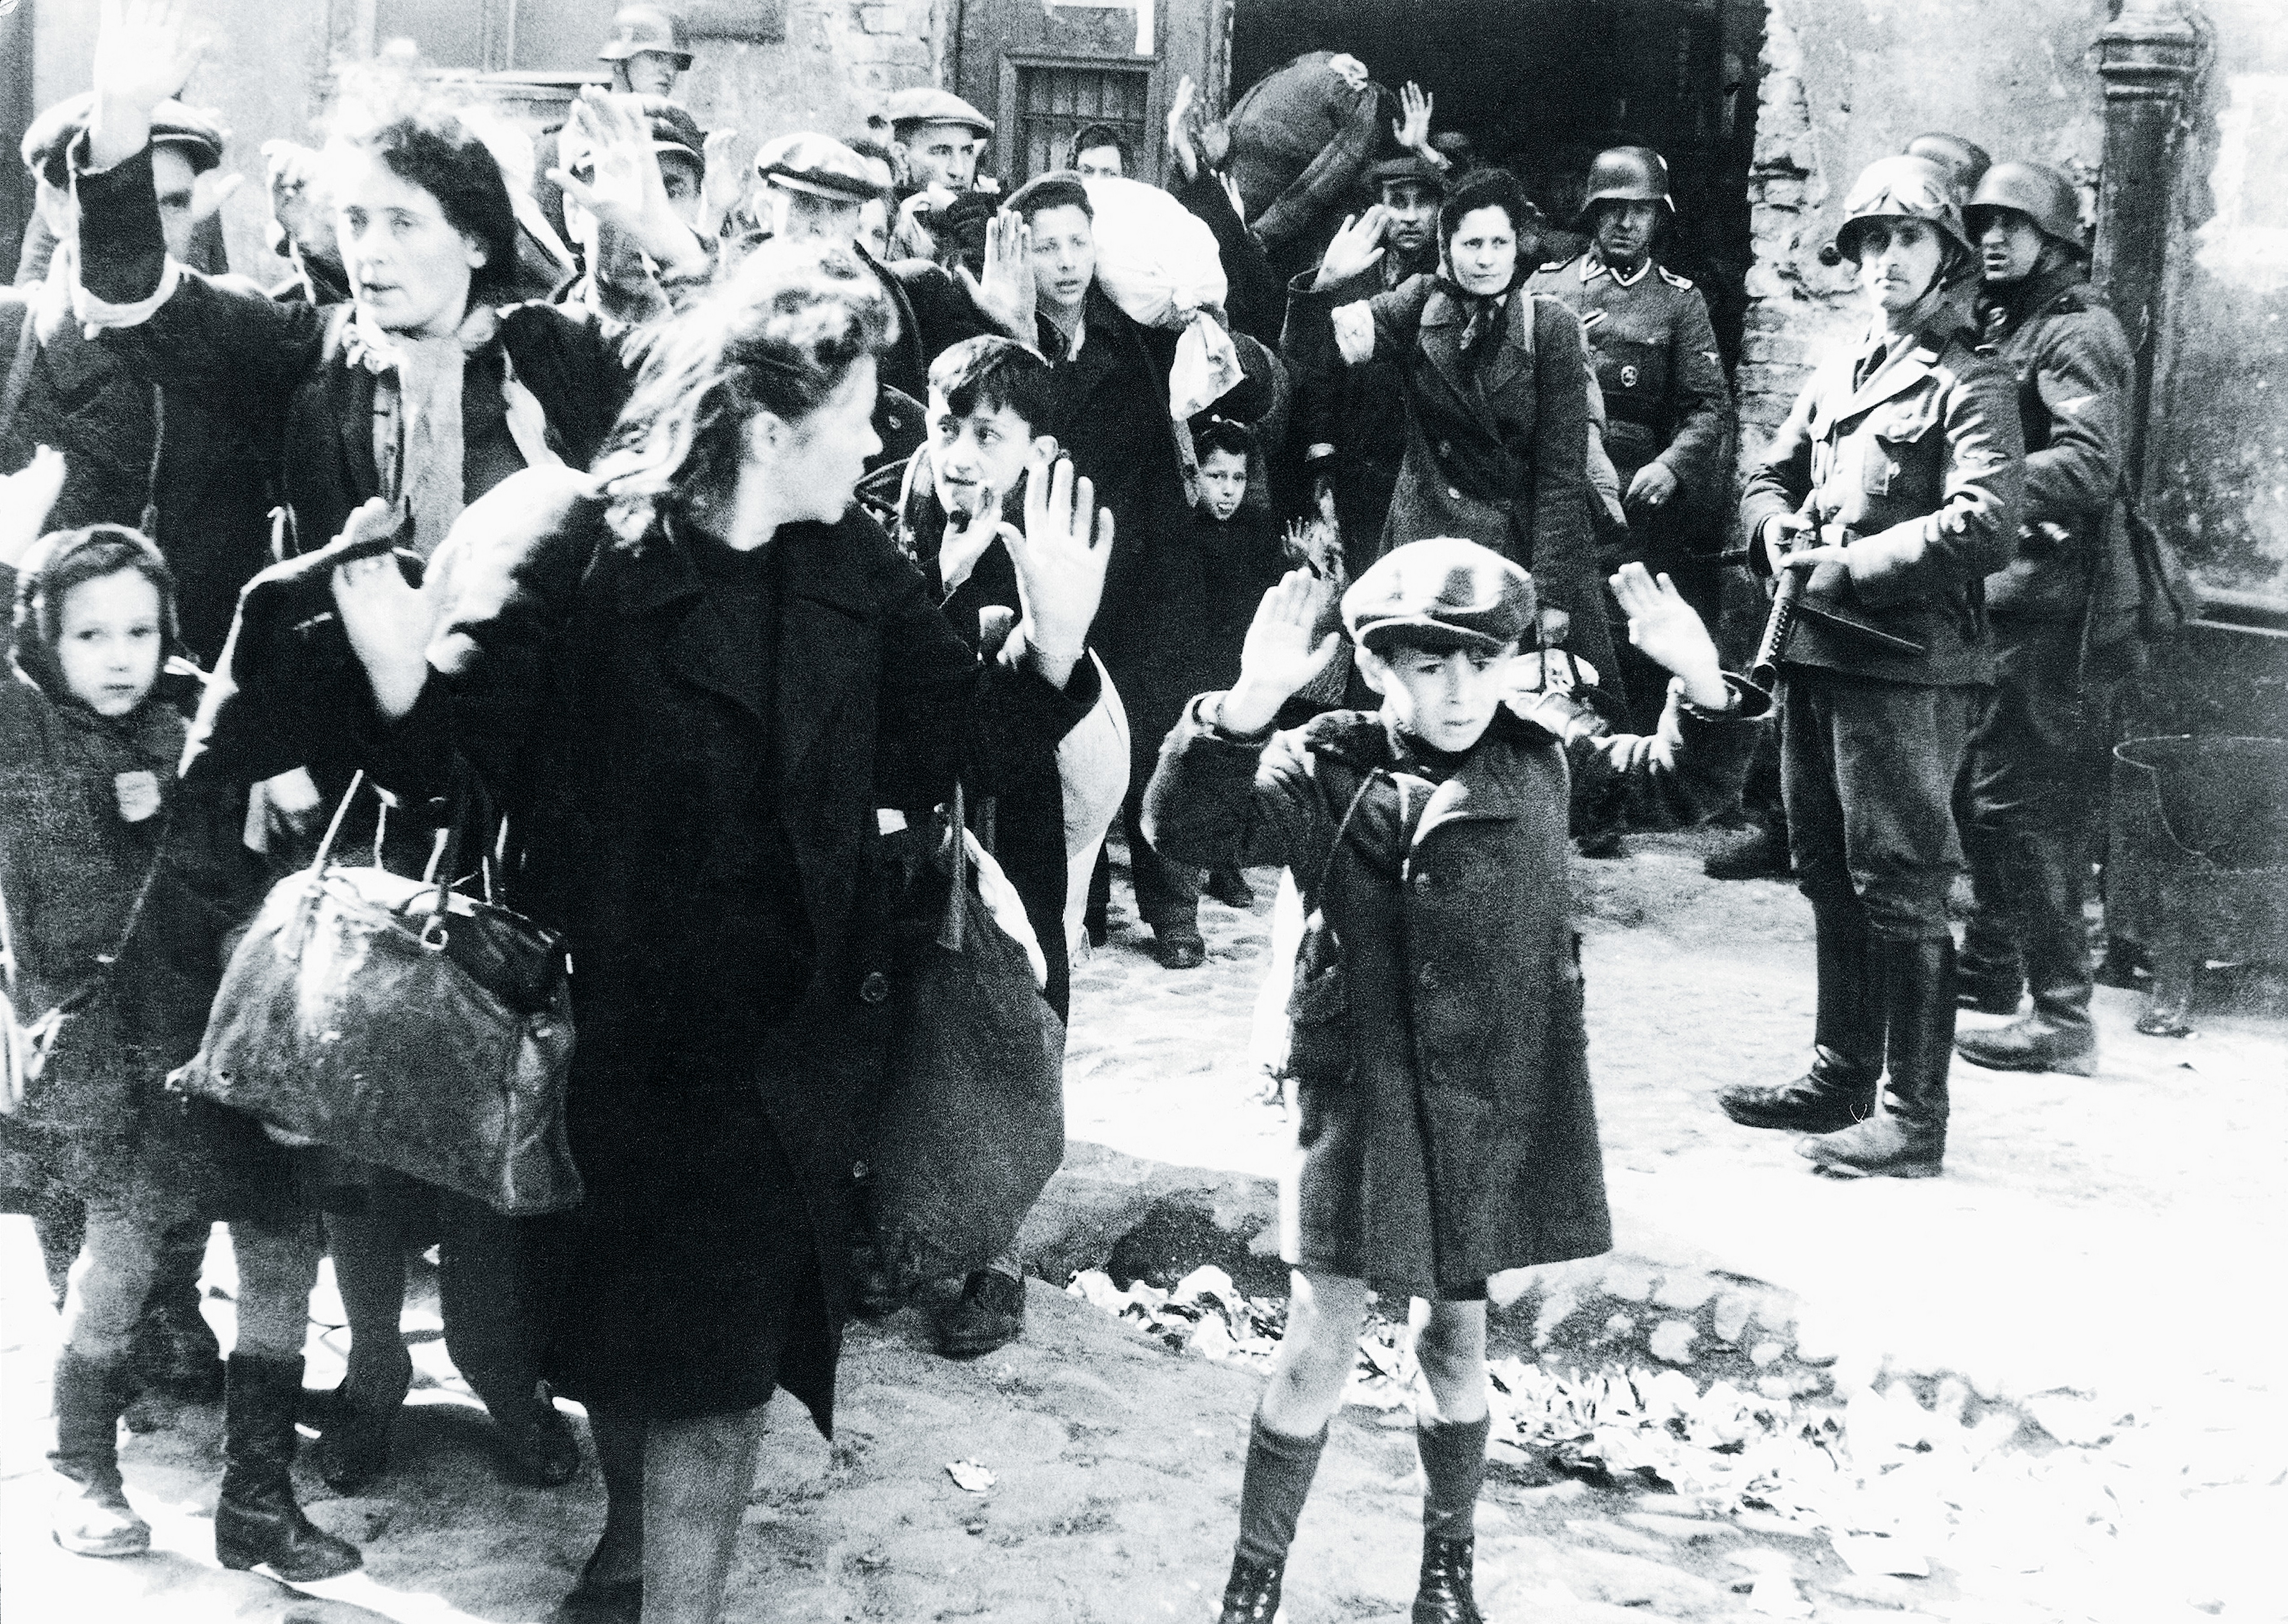 Po stłumieniu w 1943 roku powstania w warszawskim getcie hitlerowcy wywieżli pozostałych przy życiu do obozu zagłady w Treblince.